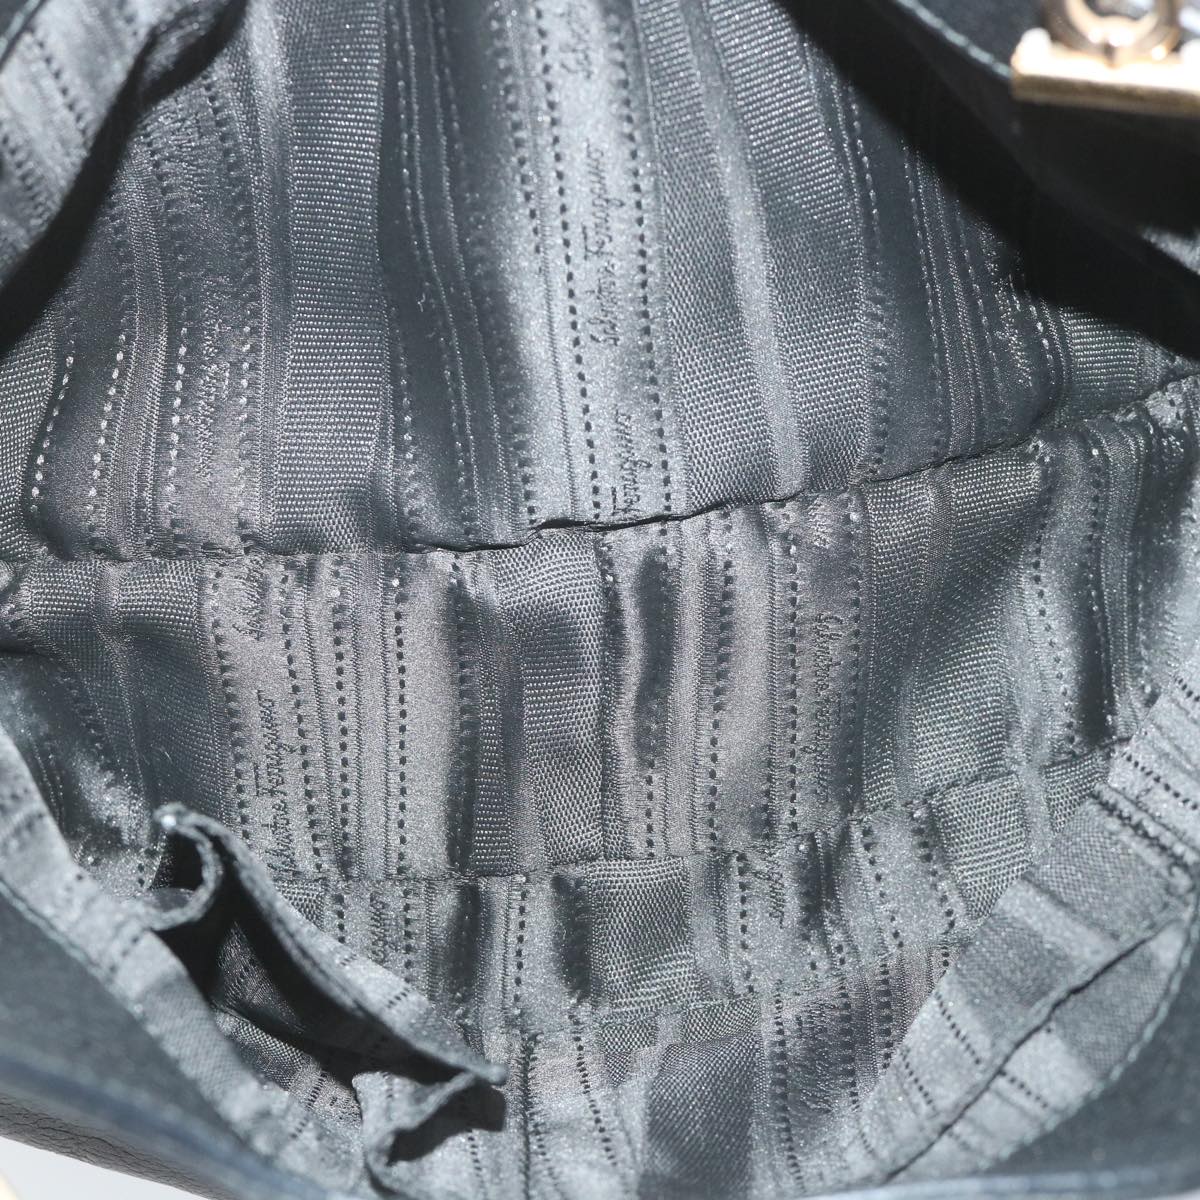 Salvatore Ferragamo Gancini Chain Tote Bag Leather Black Auth 58636